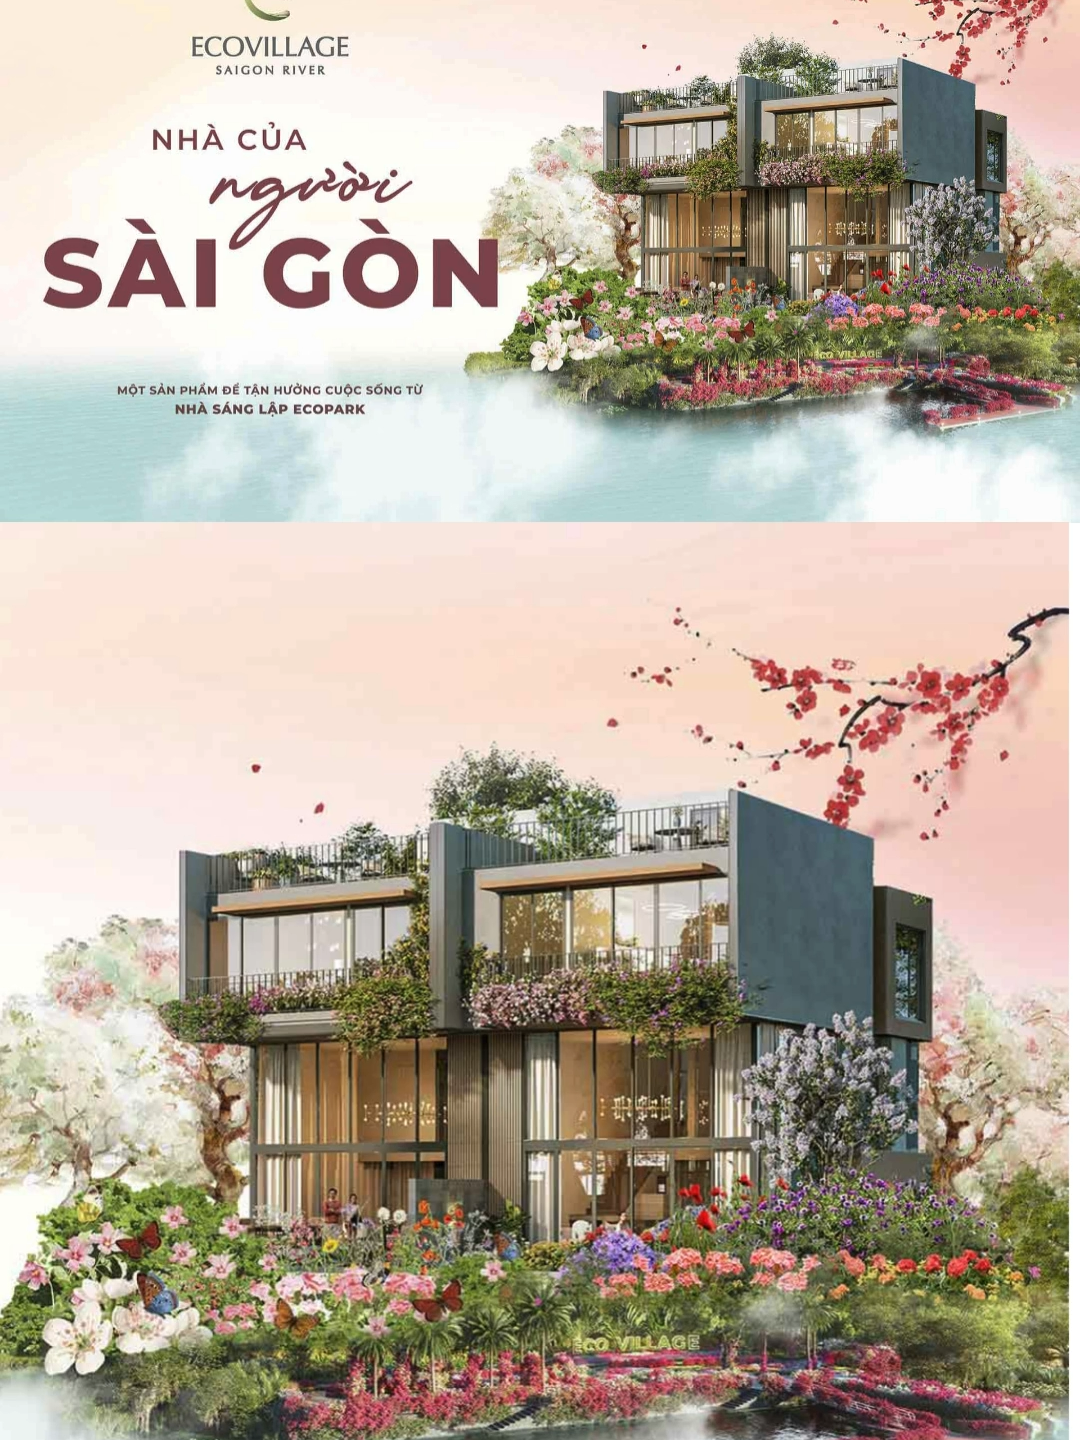 Nhà của người Sài Gòn tại Eco Village Saigon River có có gì?#ecovillagesaigonriver #ecoparksaigon #ecovillage #ecovillagesaigonriver #ecoparkhcm #ecoparksaigon #ecopark #khudothiecopark